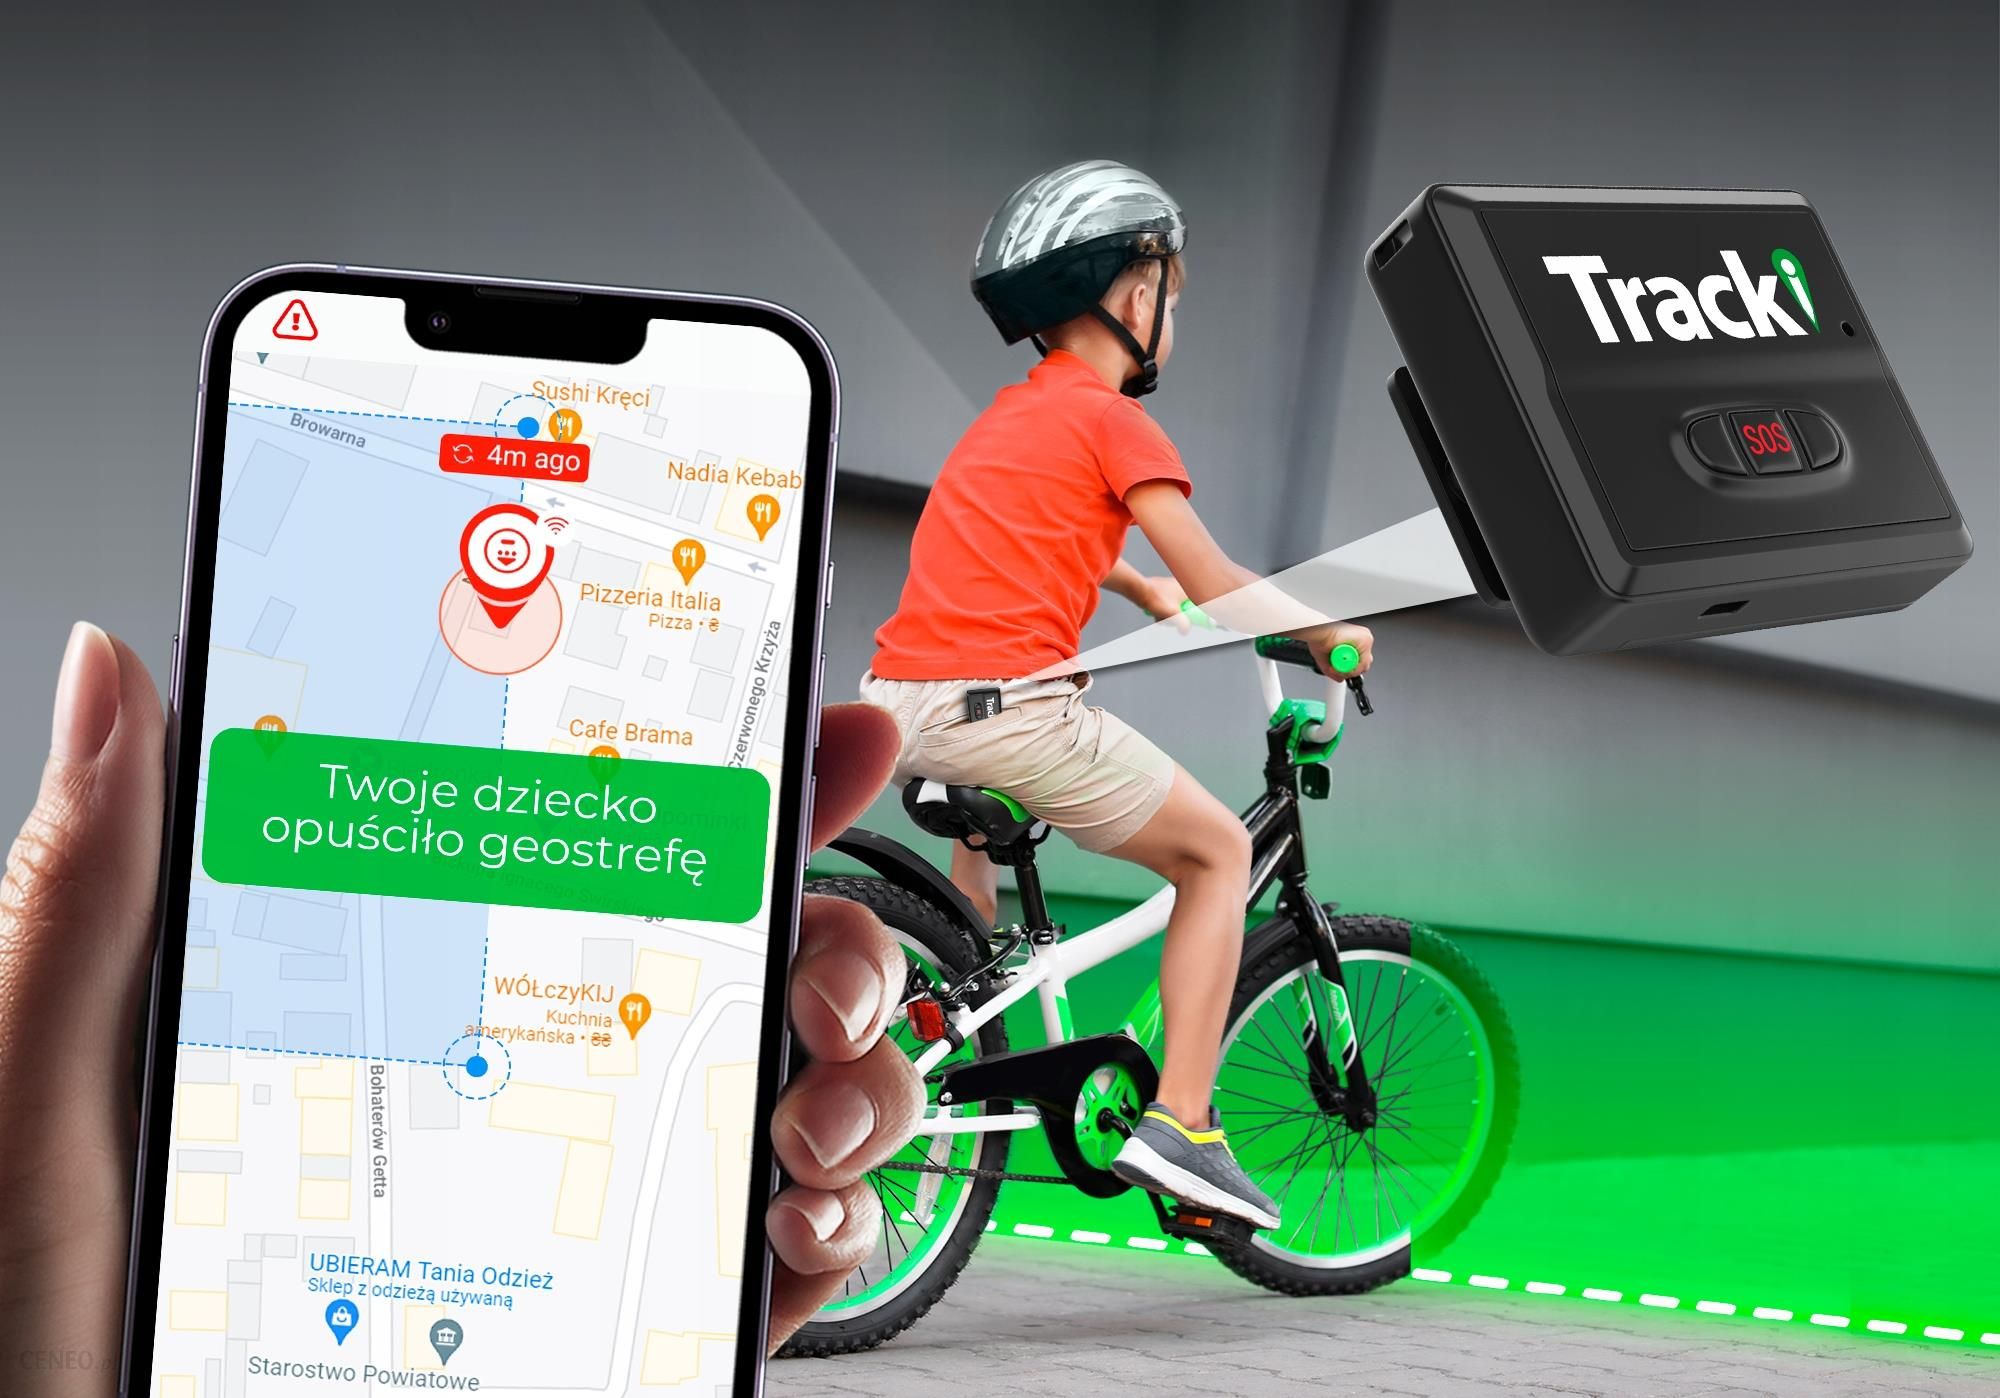  Trackimo Tracki 3G Lokalizator GPS z kartą SIM instrukcja - foto 6